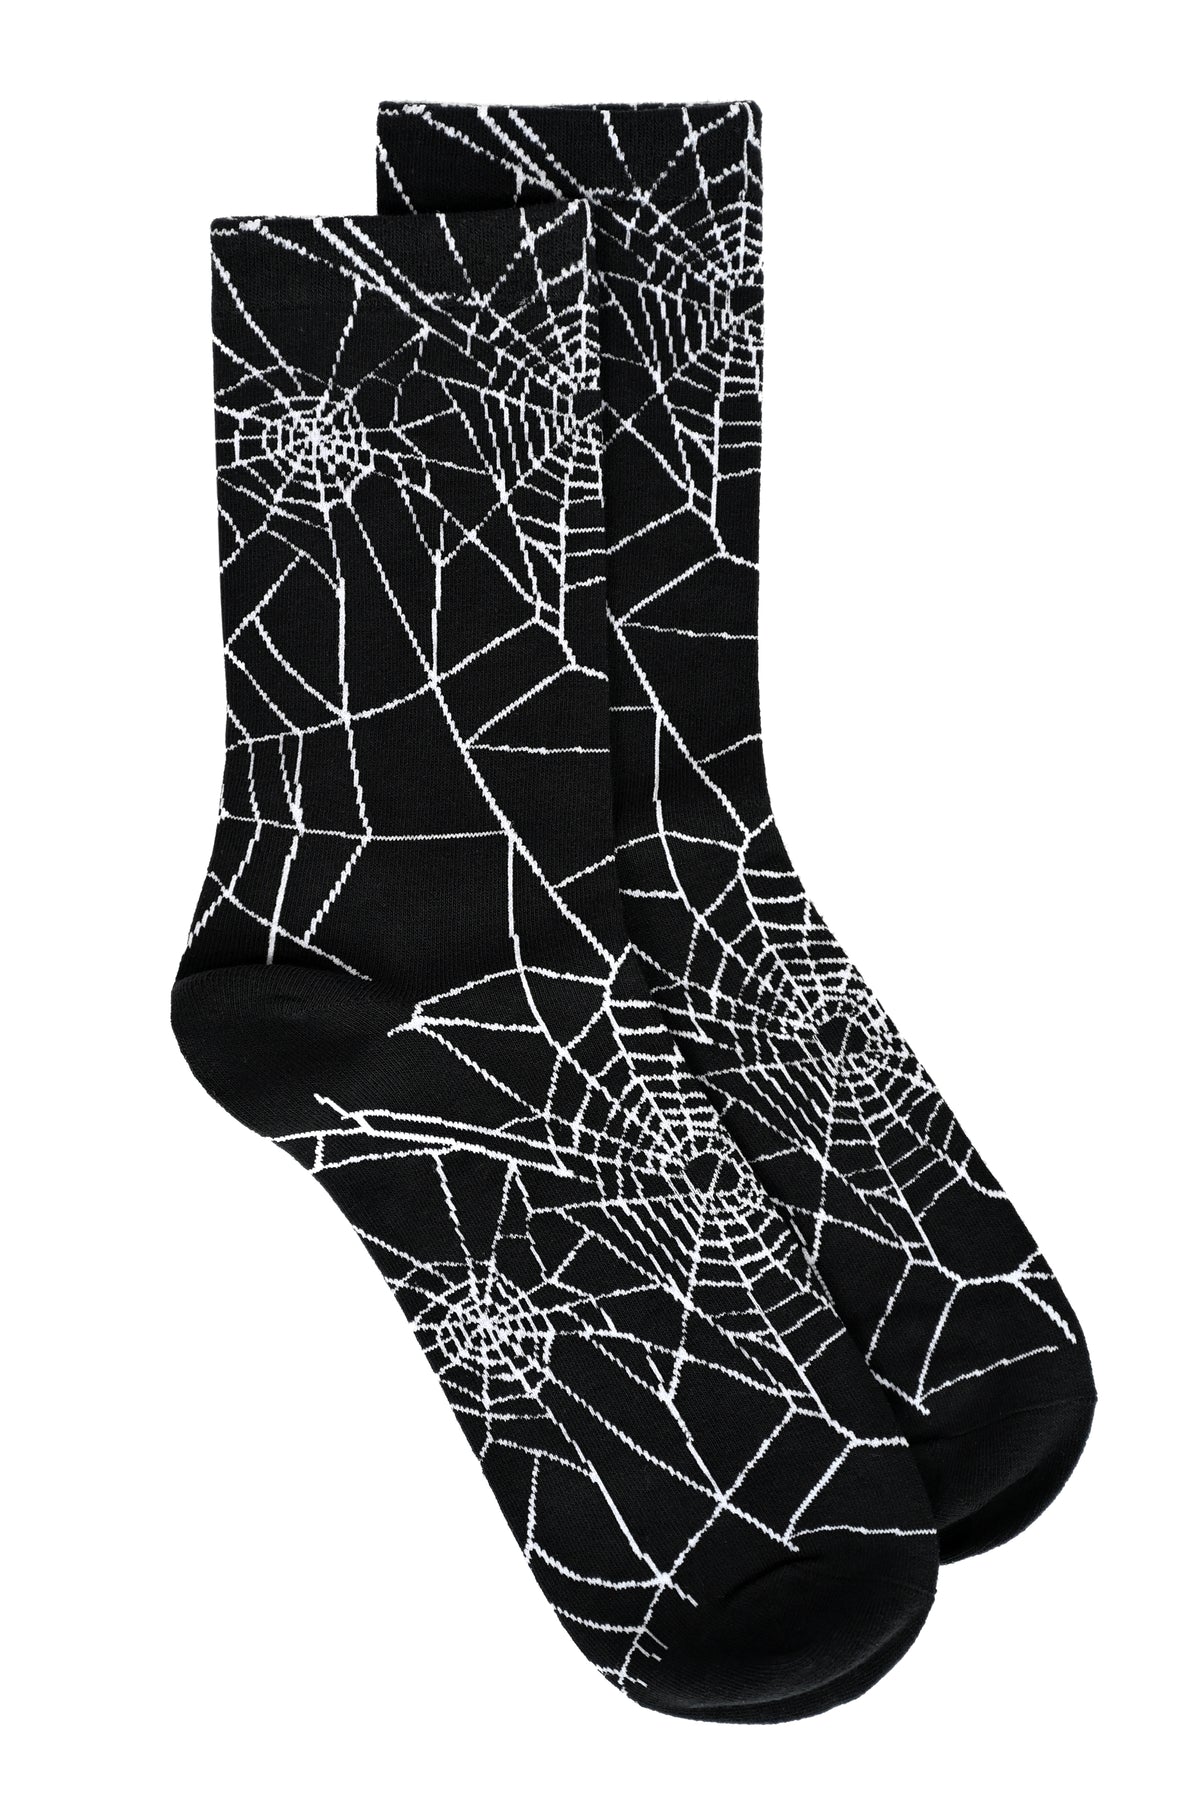 black socks with a white spiderweb design